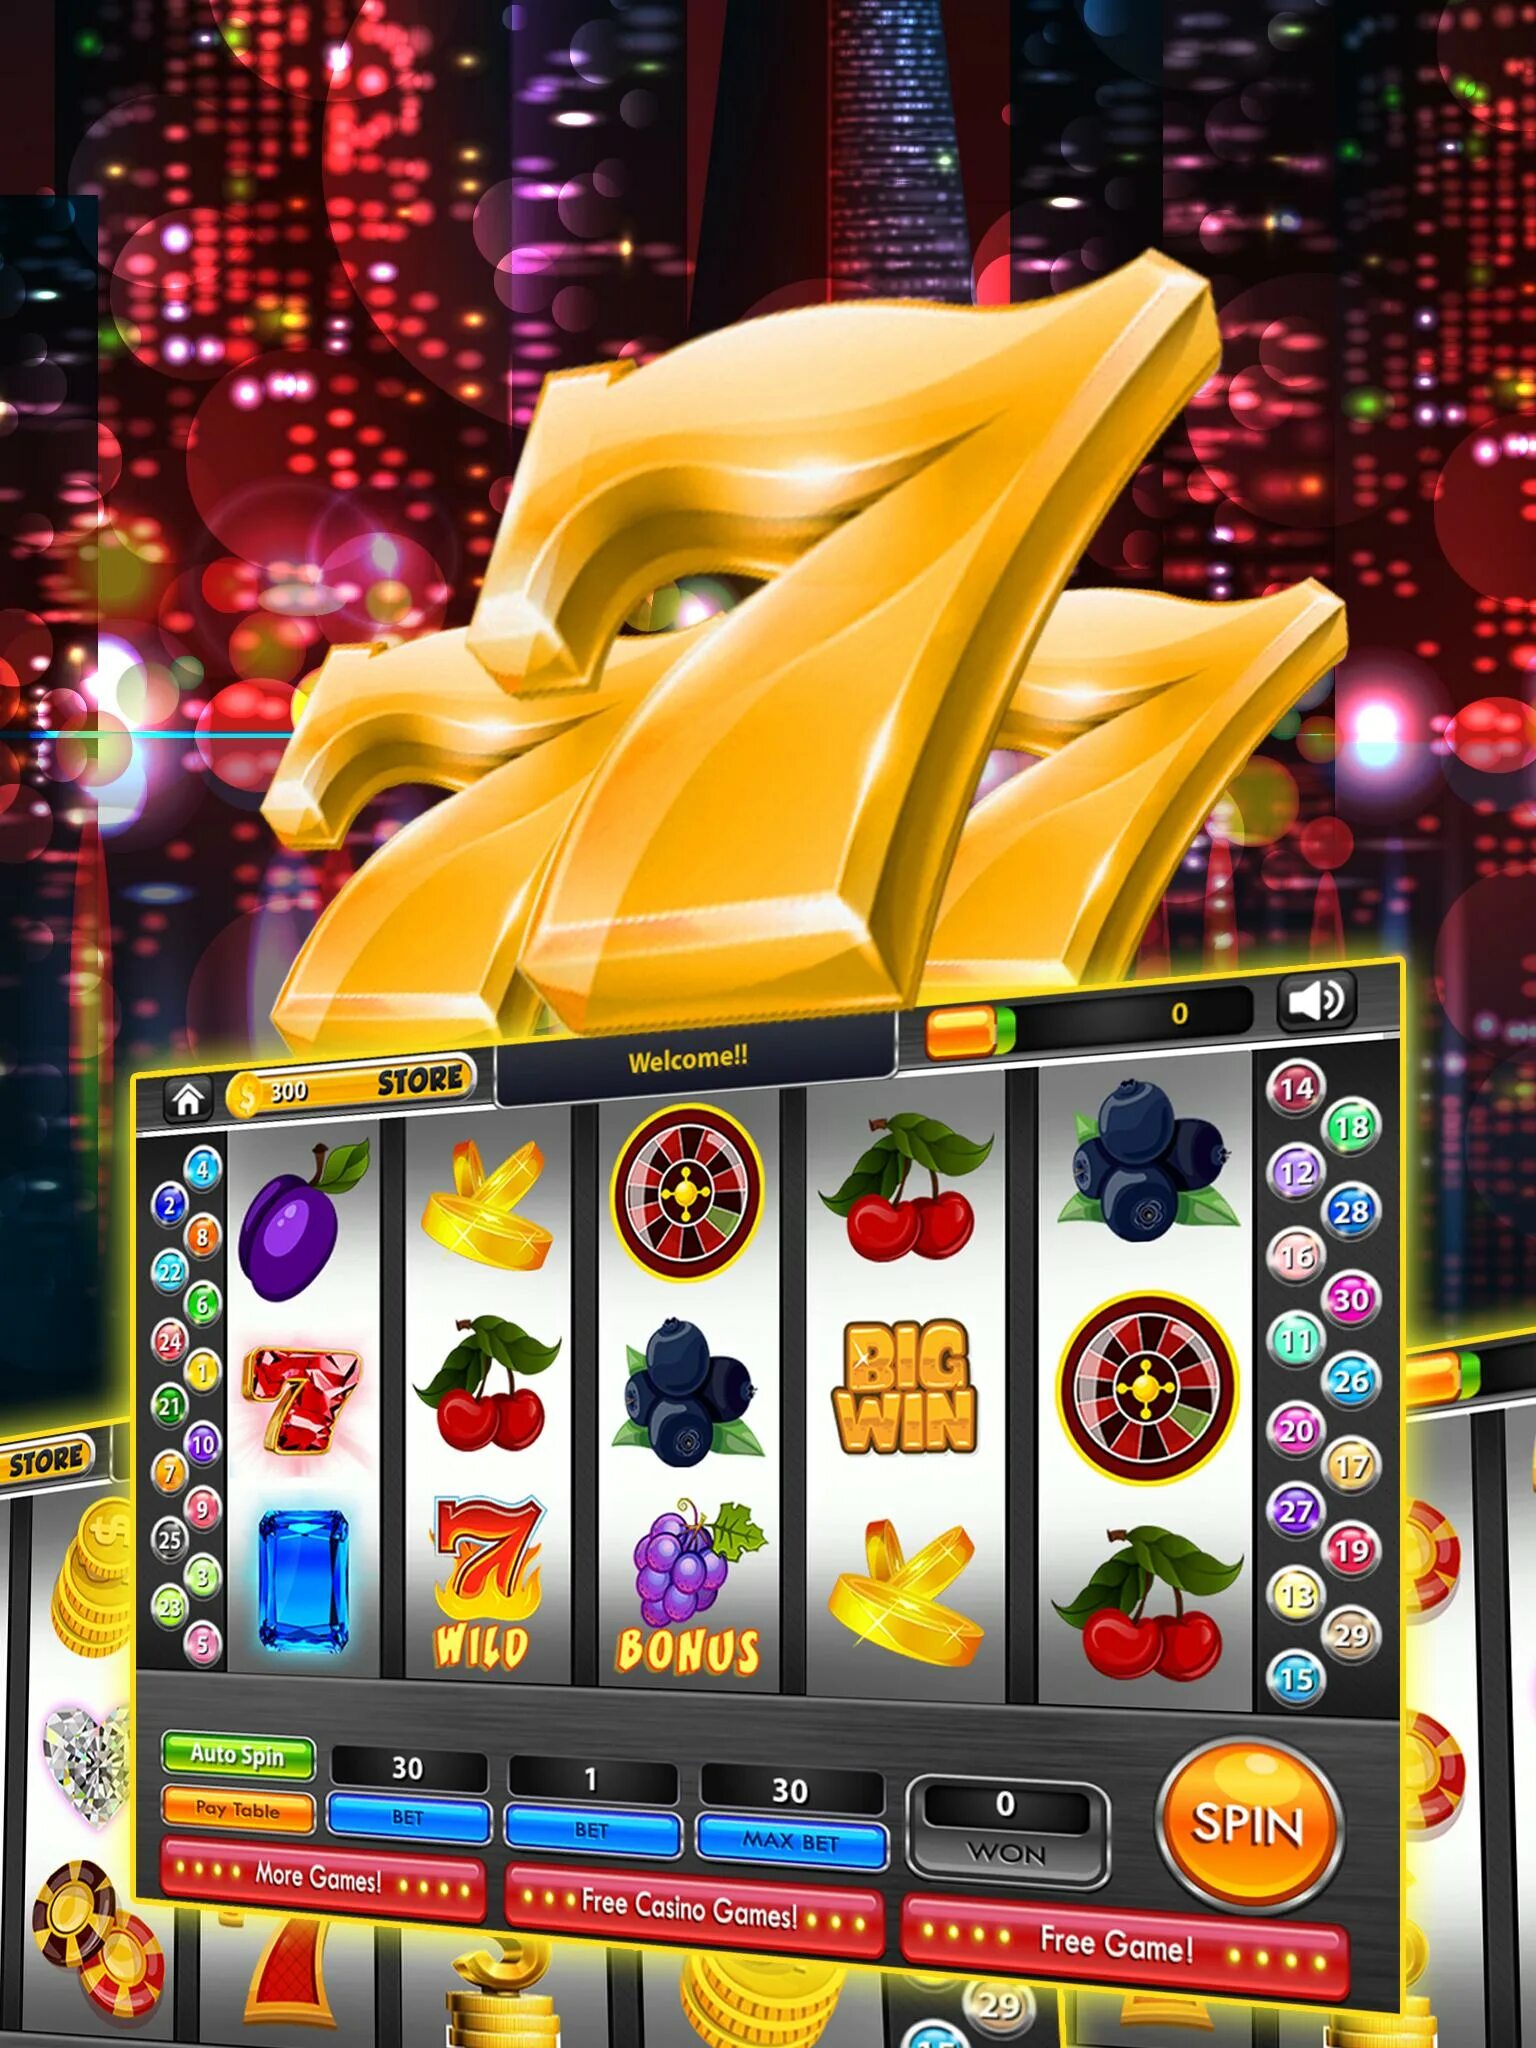 Игровые автоматы слоты 777. 777 Слотс автоматы казино интернет. Игрушка игровой автомат казино. Игровые автоматы на реальные деньги.